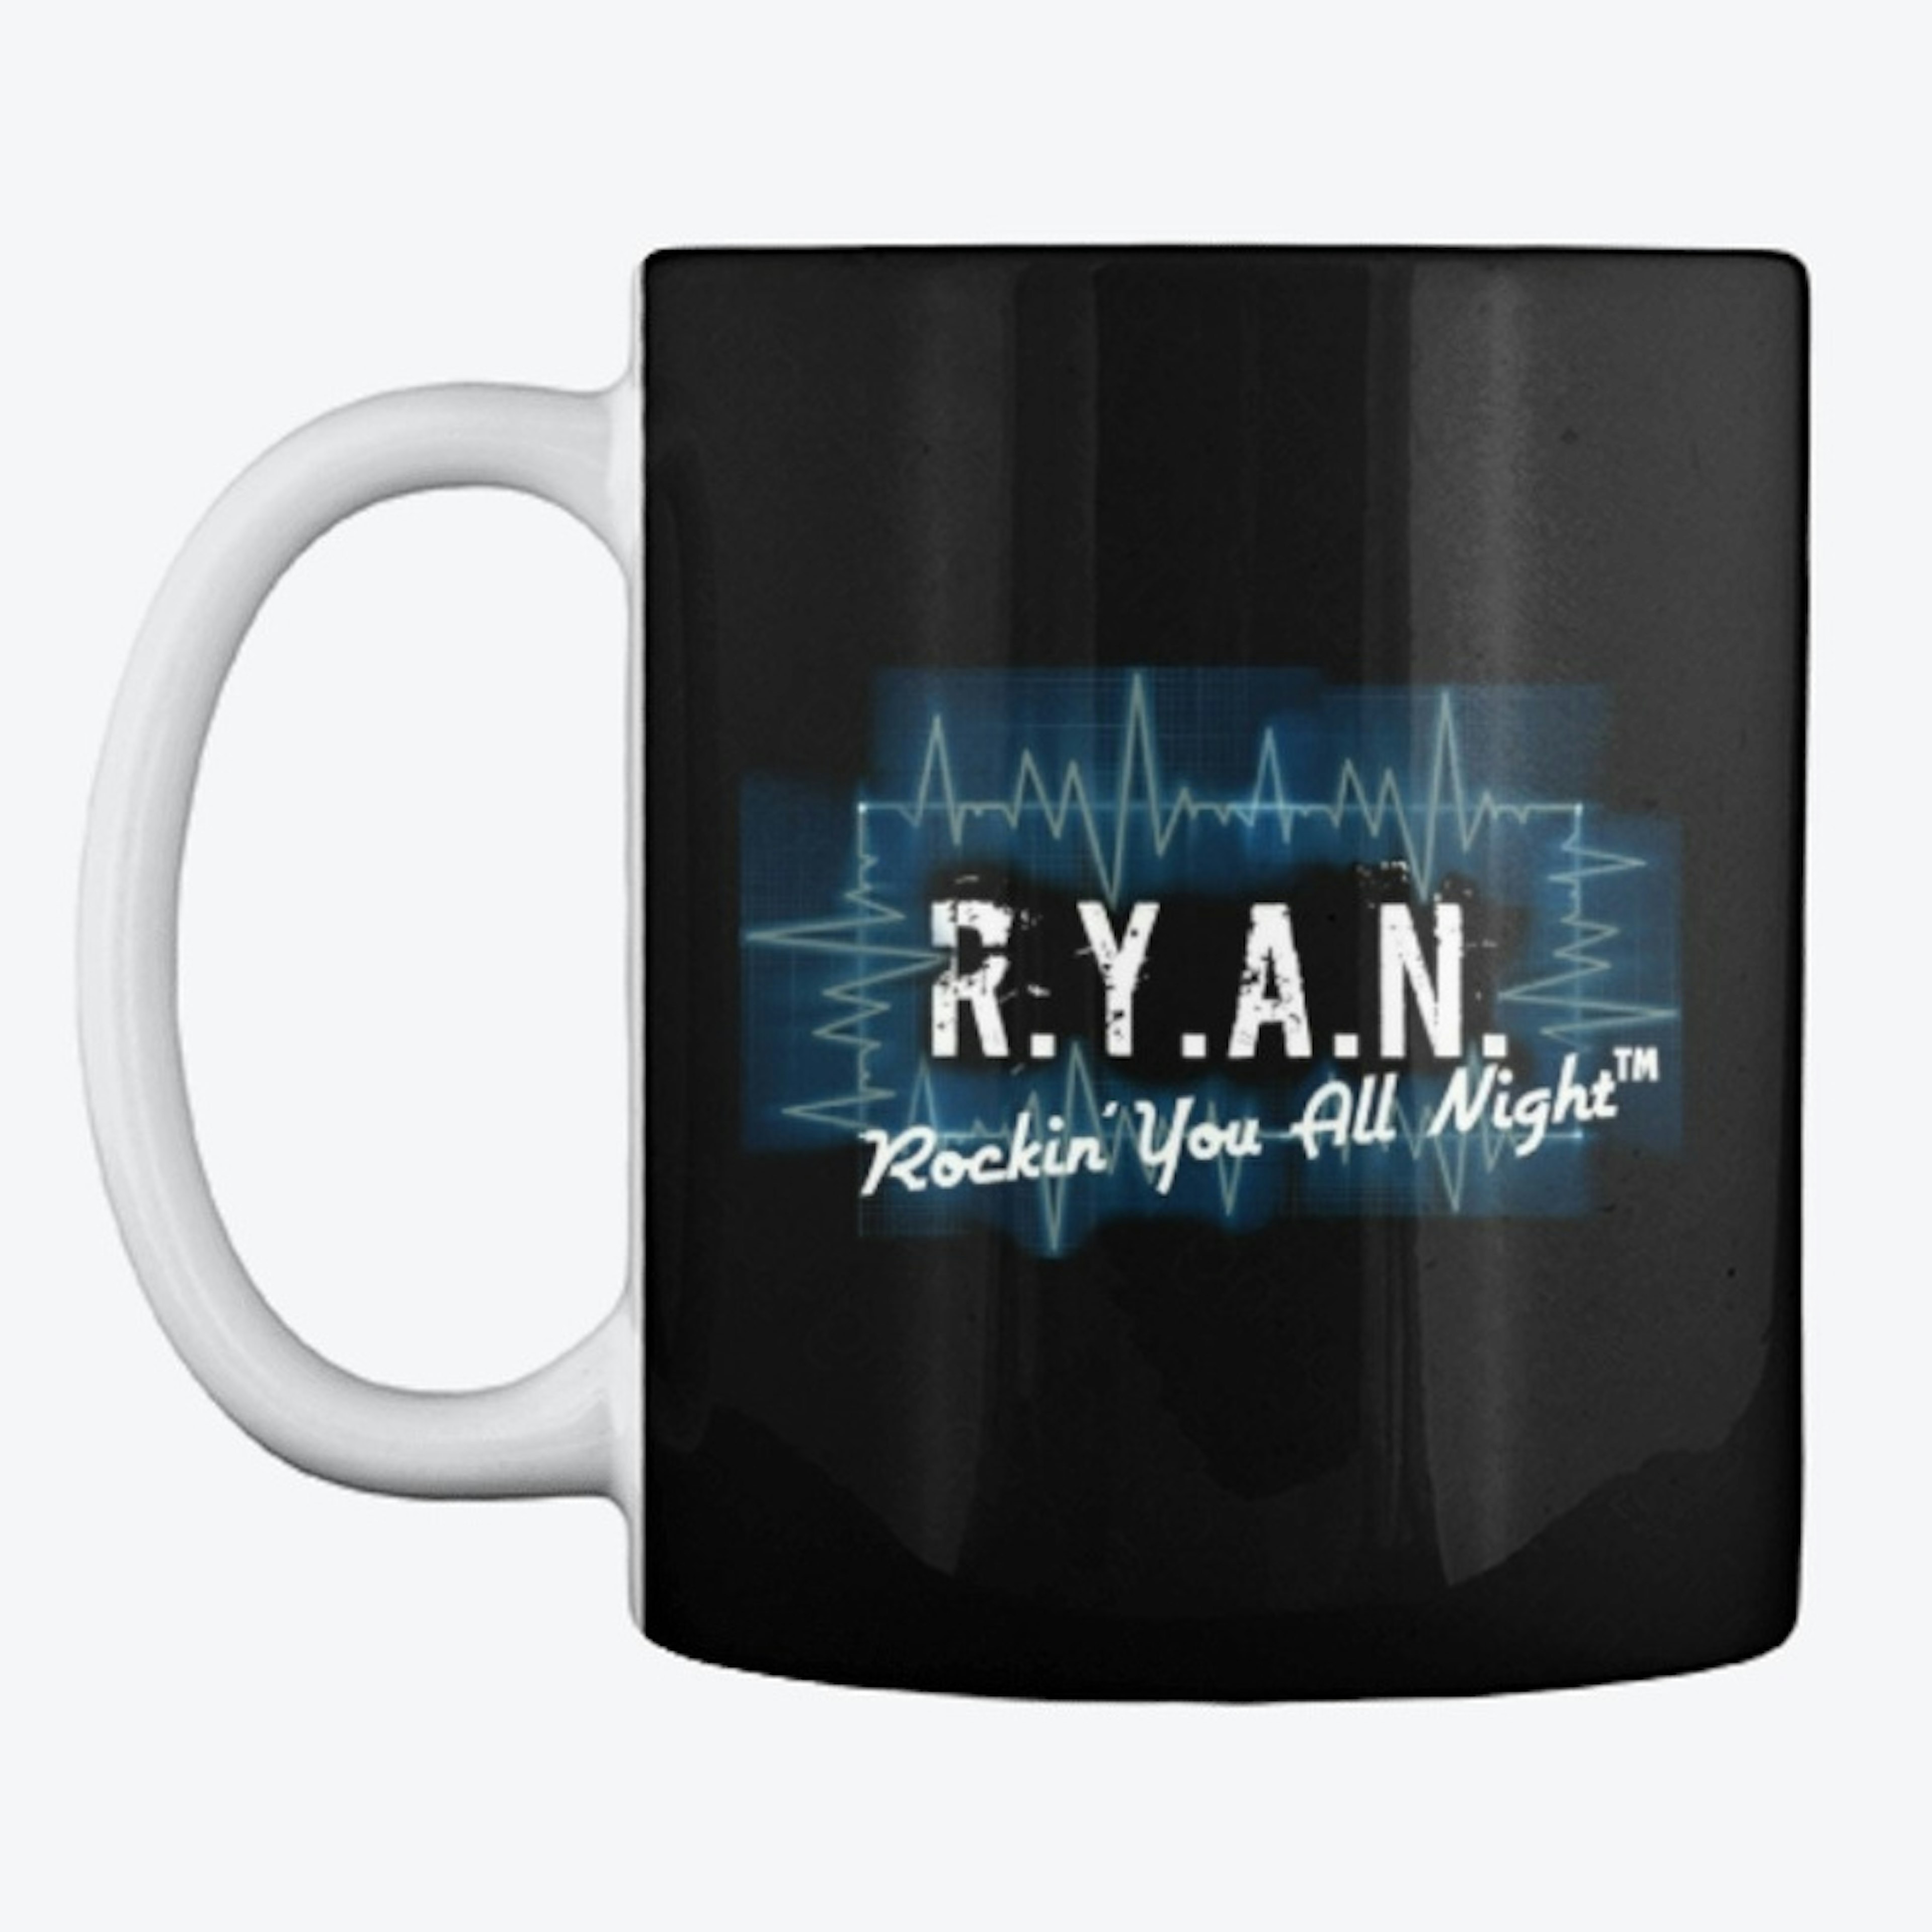 R.Y.A.N. Coffee Cup